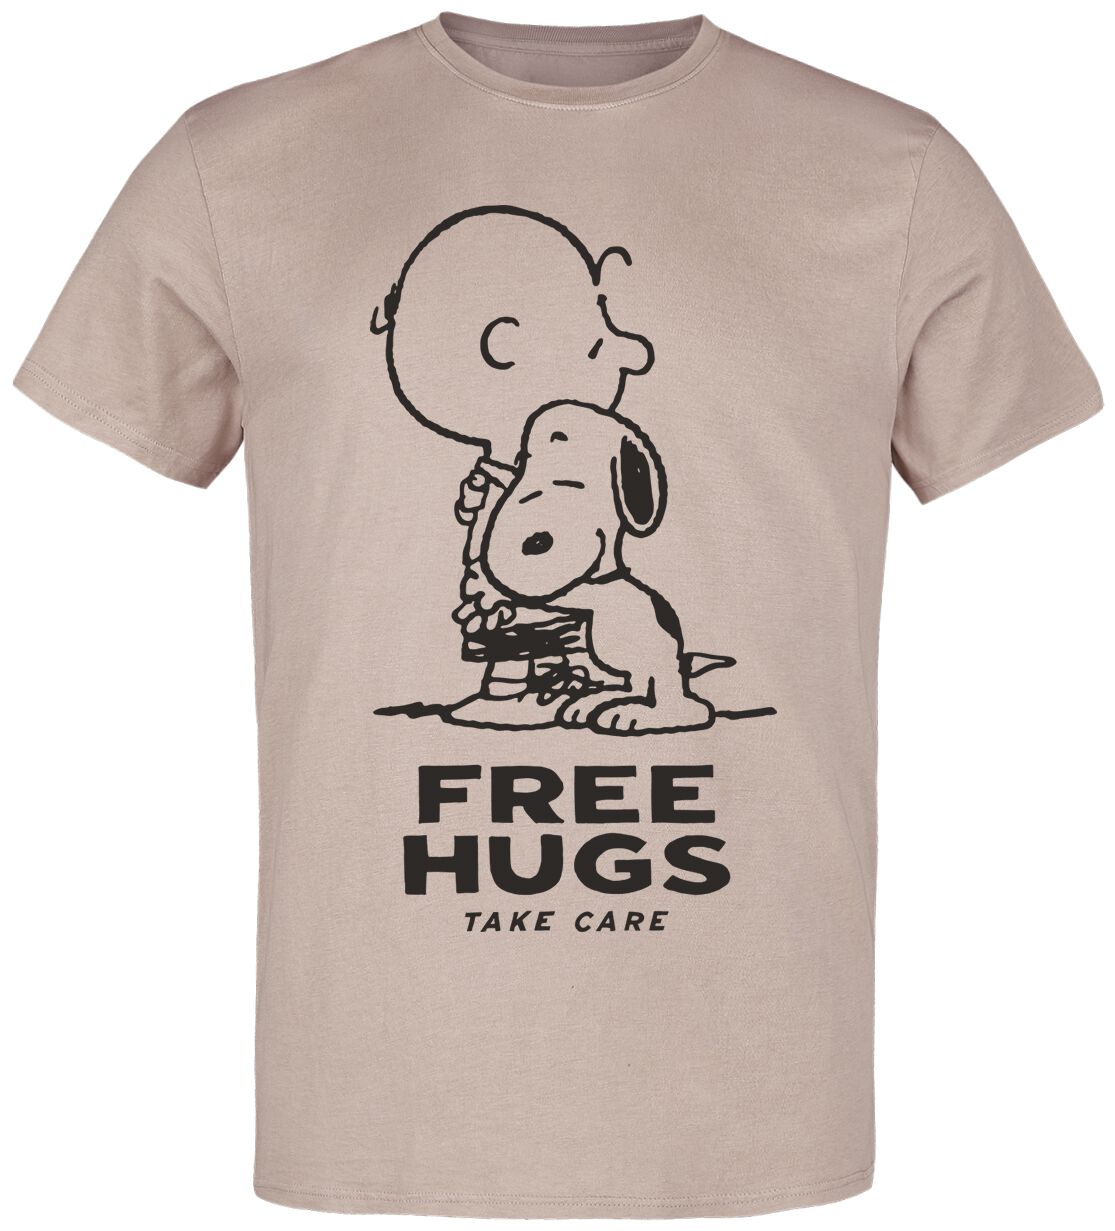 Peanuts T-Shirt - Free Hugs - S bis 3XL - für Männer - Größe 3XL - multicolor  - EMP exklusives Merchandise!